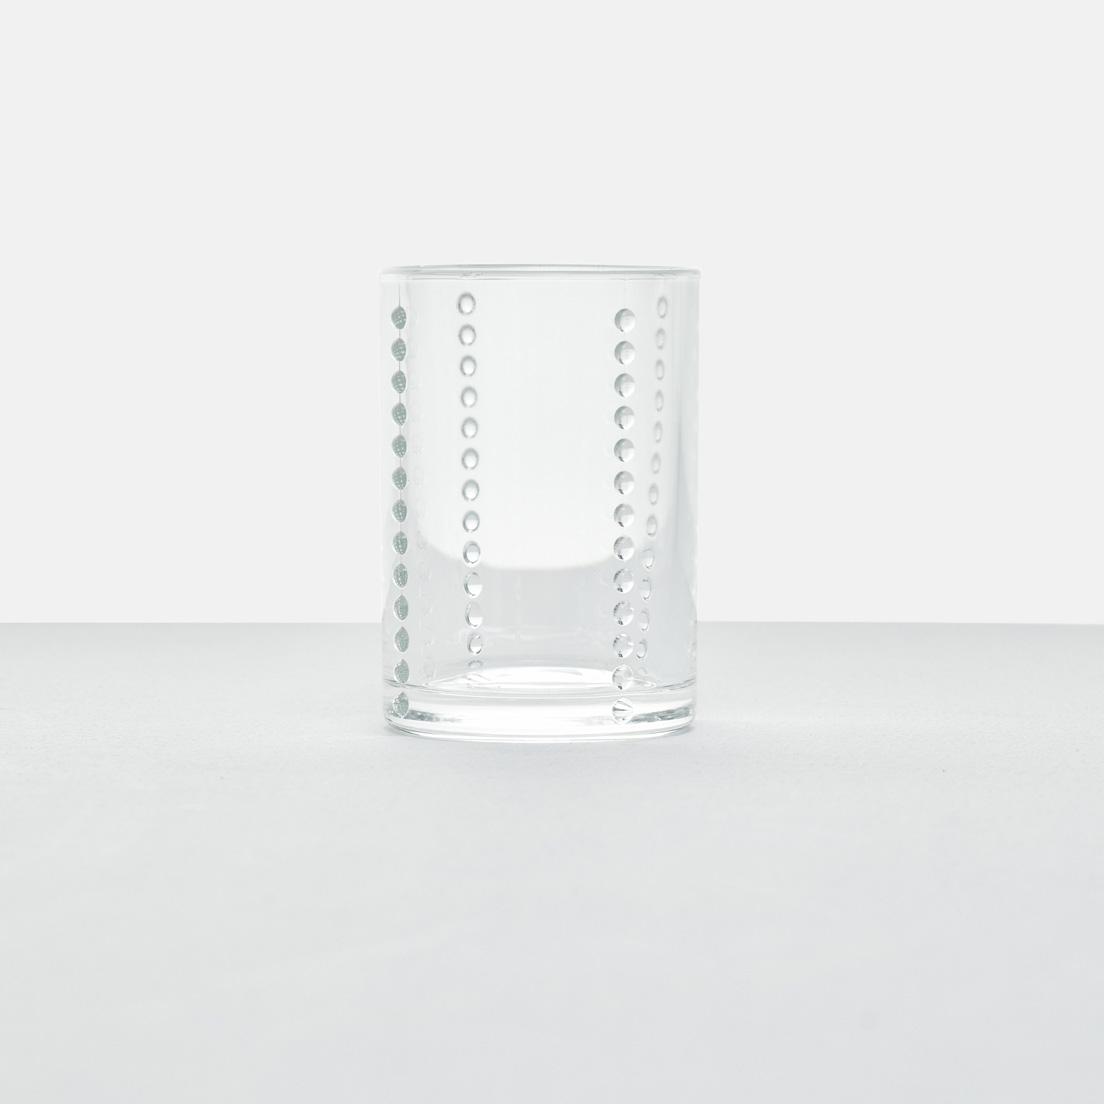 Yグラス〈廣田硝子〉
by 柳 宗理
柳宗理が1966年にデザインし、2018年に復刻されたグラス。筒型のグラスに伸びる縦４列の粒状の突起はグラスに水滴がついても滑り止めの役割を果たす。一般的なグラスよりやや重く、安定感がある。サイズはＳ、Ｌの２種、色はクリア、アンバー、ブルーの３種を用意。Ｌクリア2,750円（廣田硝子 TEL 03 3623 4145）。